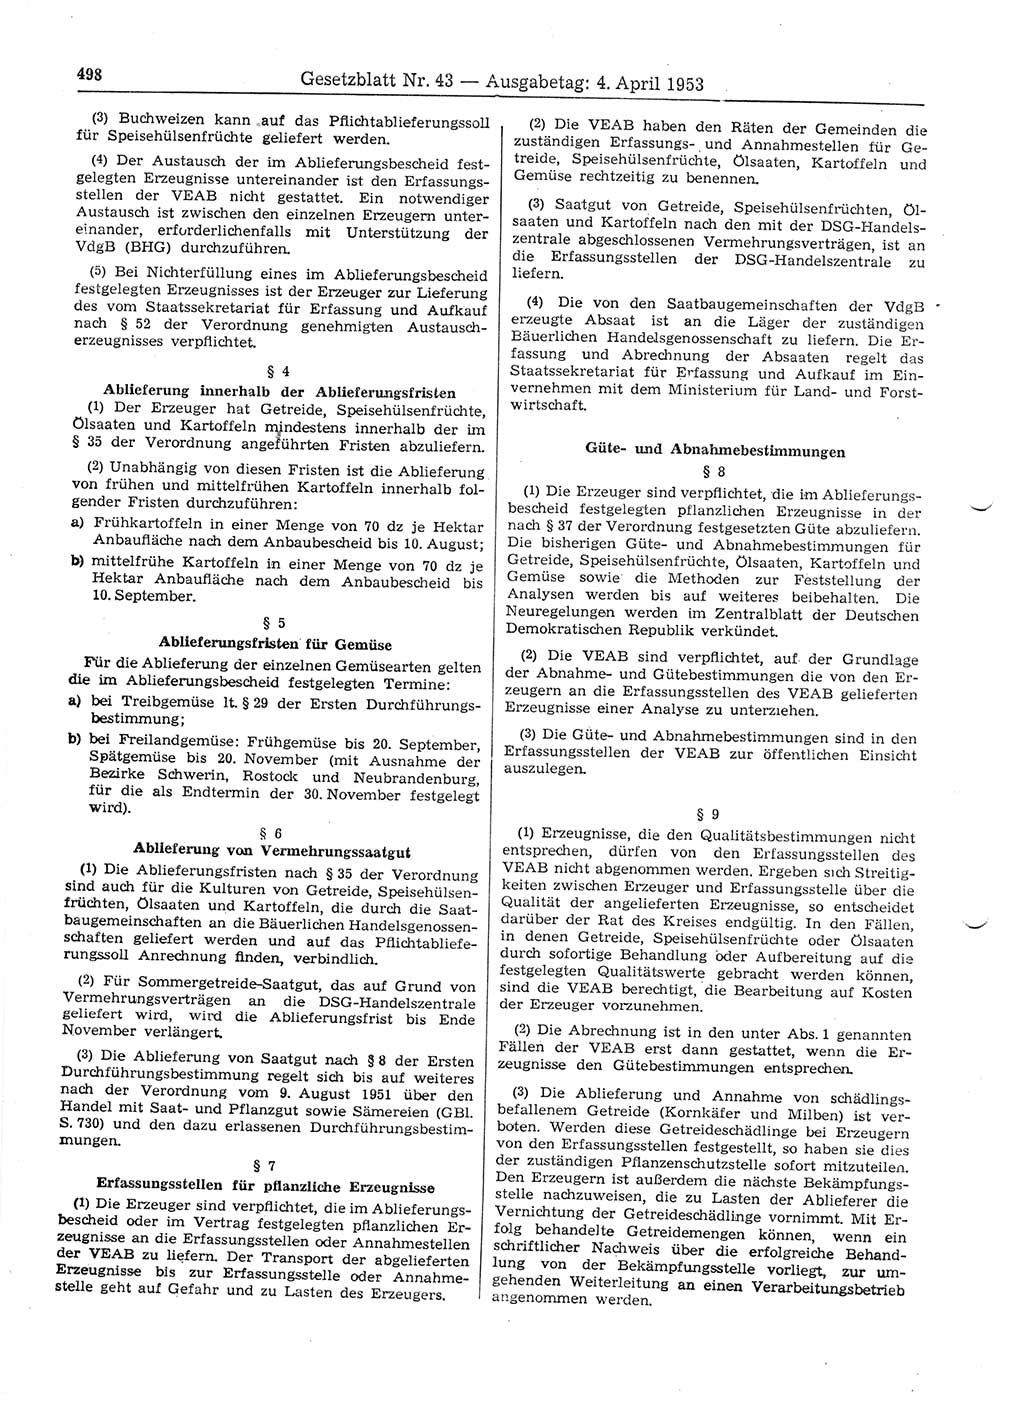 Gesetzblatt (GBl.) der Deutschen Demokratischen Republik (DDR) 1953, Seite 498 (GBl. DDR 1953, S. 498)